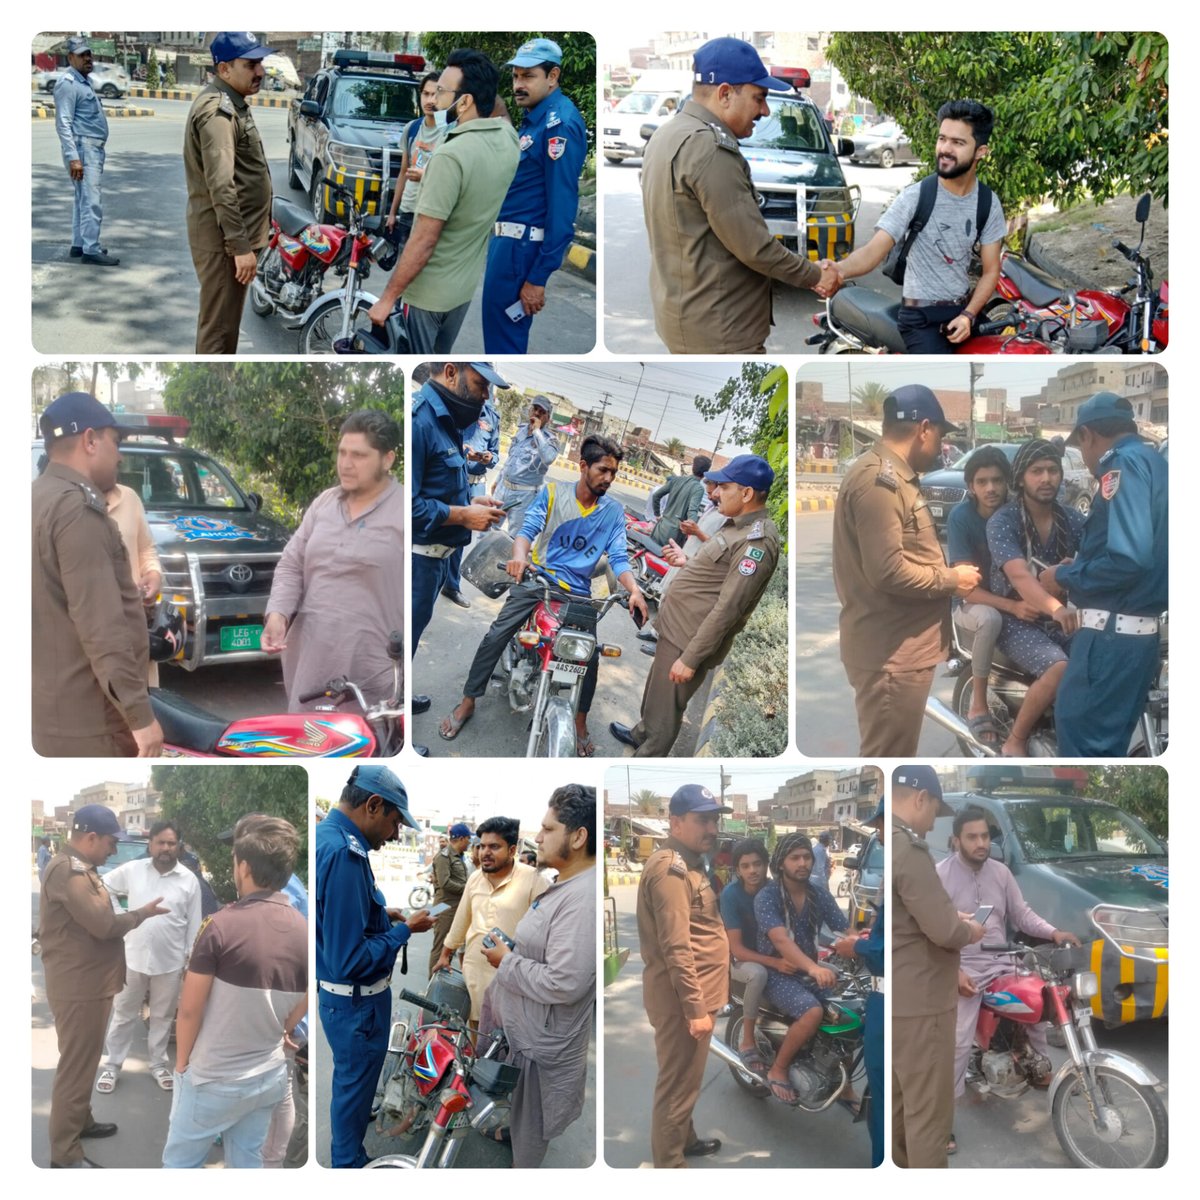 ٹریفک قوانین سڑک استعمال کرنے والوں کی حفاظت کے لیے ہیں، ٹریفک قوانین پر عمل کریں اور ایک ذمہ دار شہری بنیں۔ #lahoretrafficpolice #lahore #PunjabPoliceOfficialPakistan #IGPunjab #GovtOfPunjab